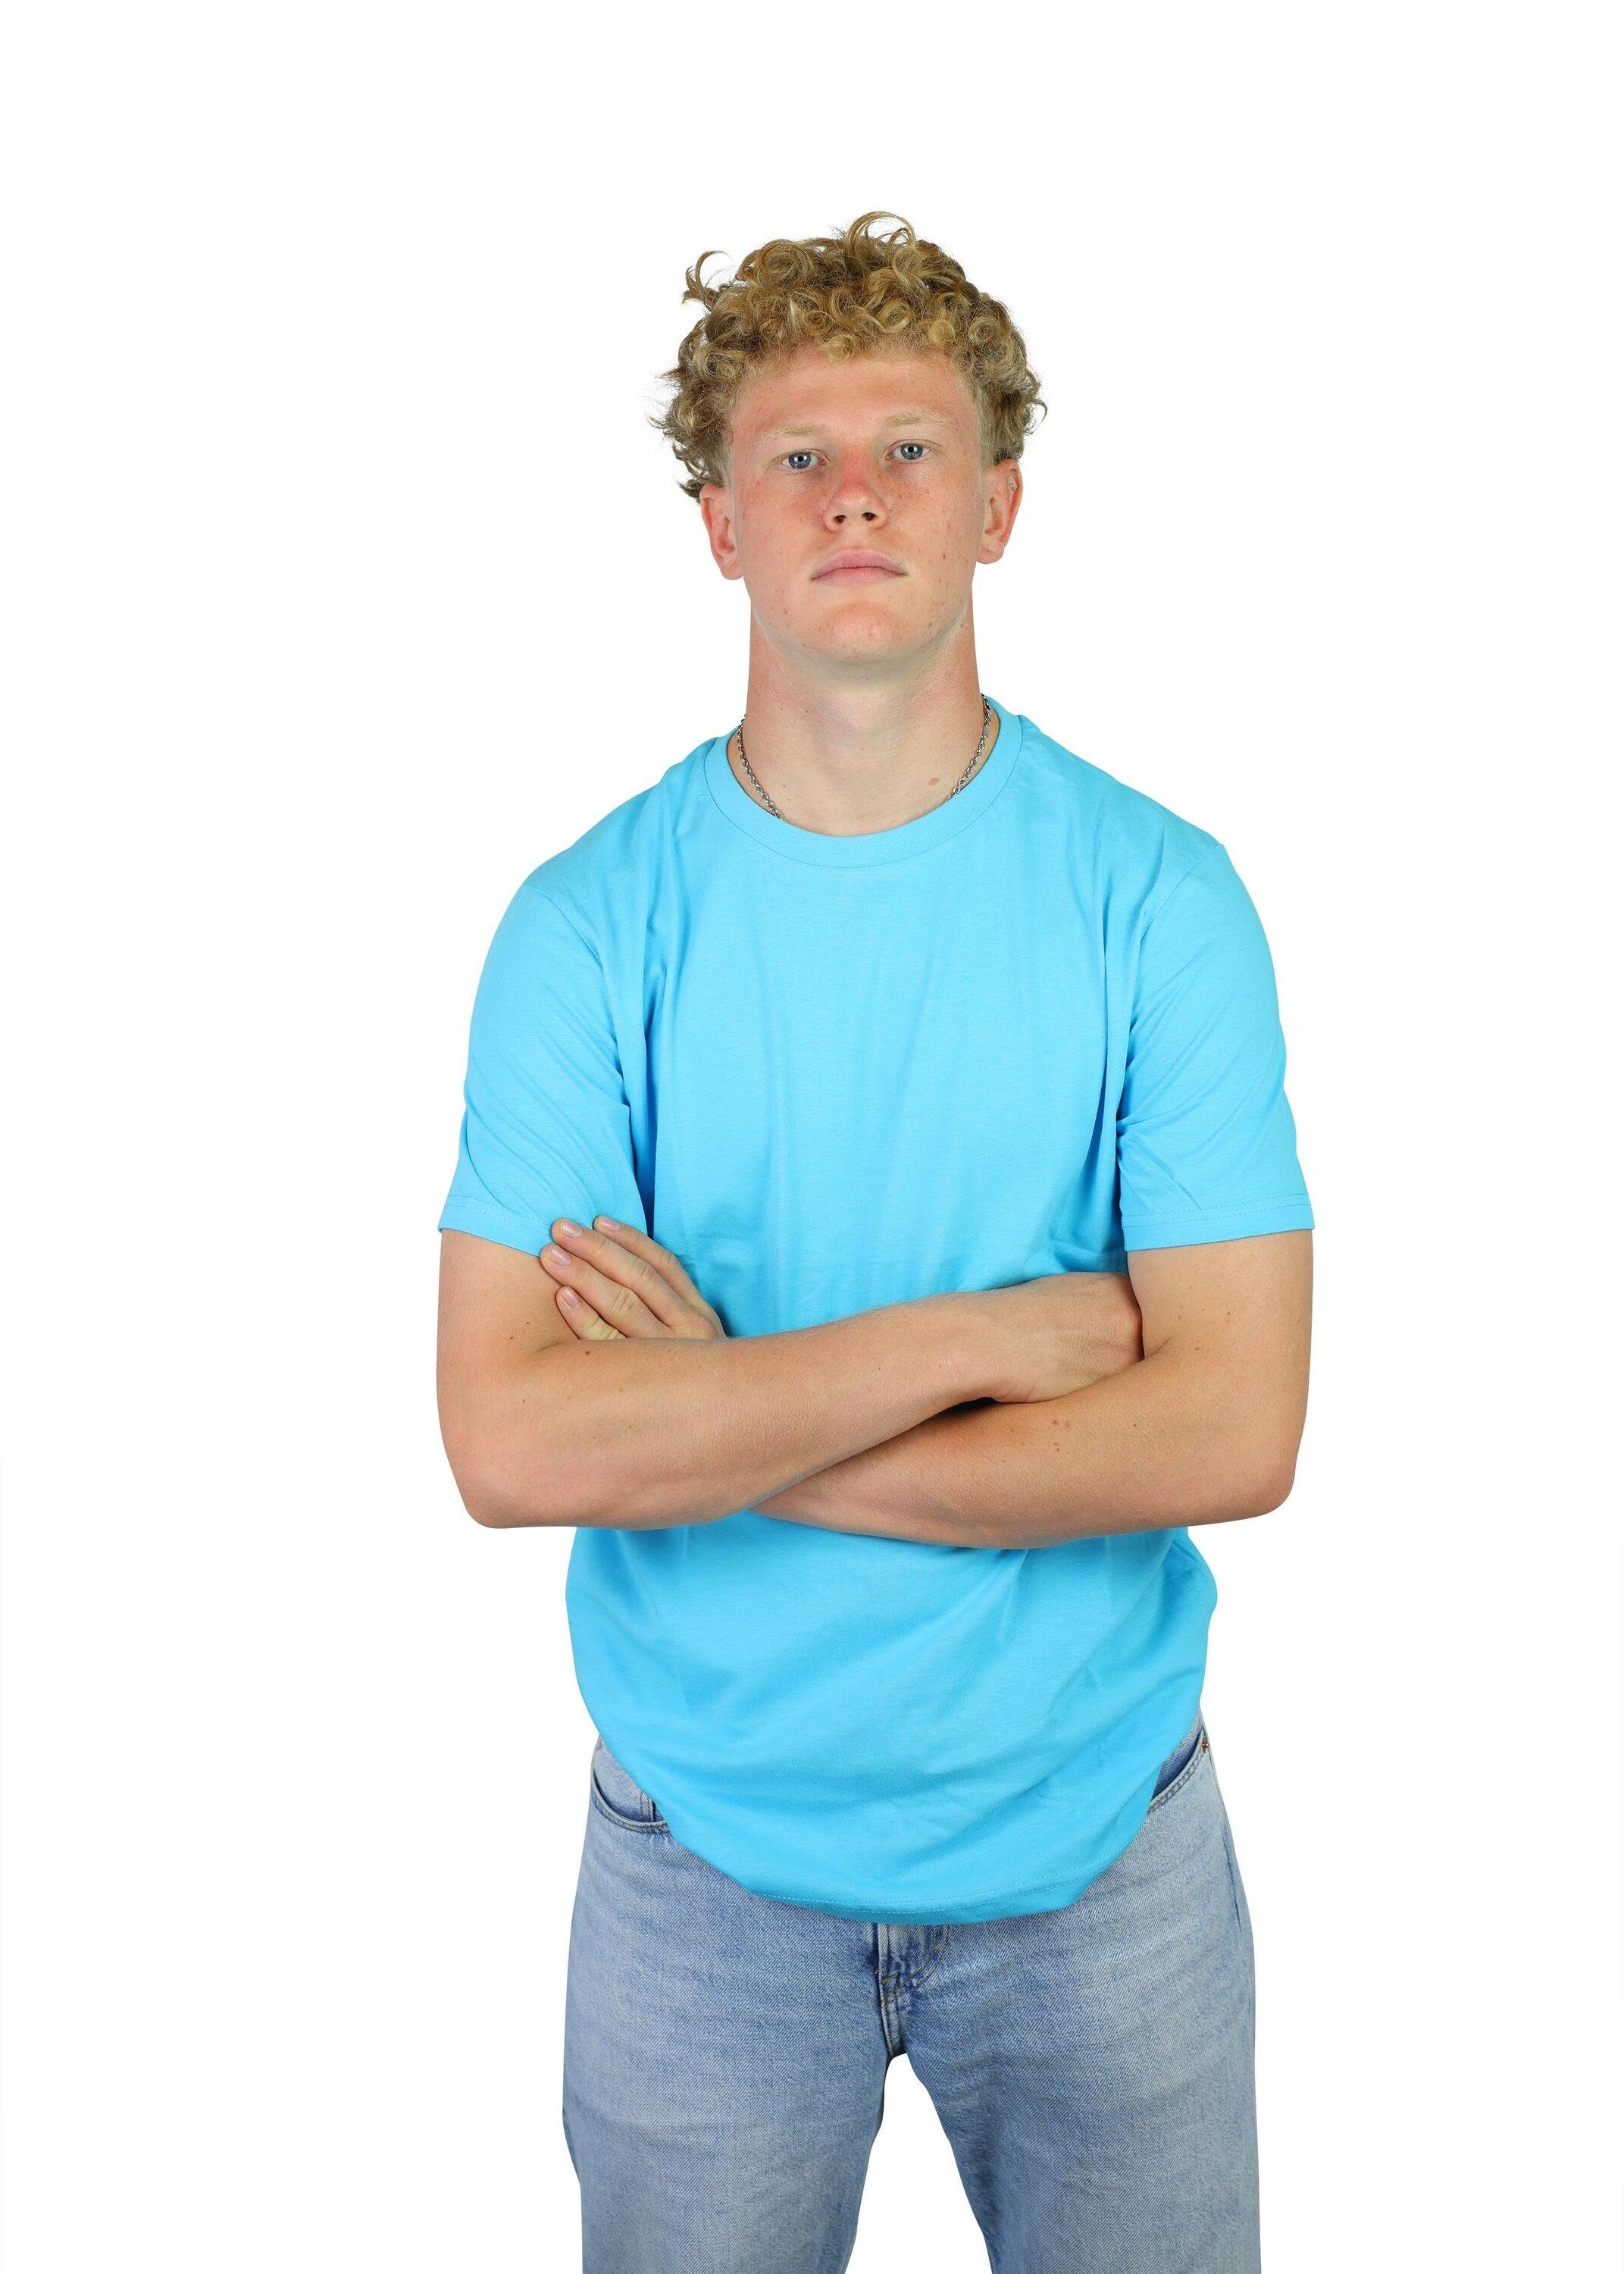 Kinder, Jugend Karl Baumwolle, für T-Shirt aus FuPer Fußball, Blue